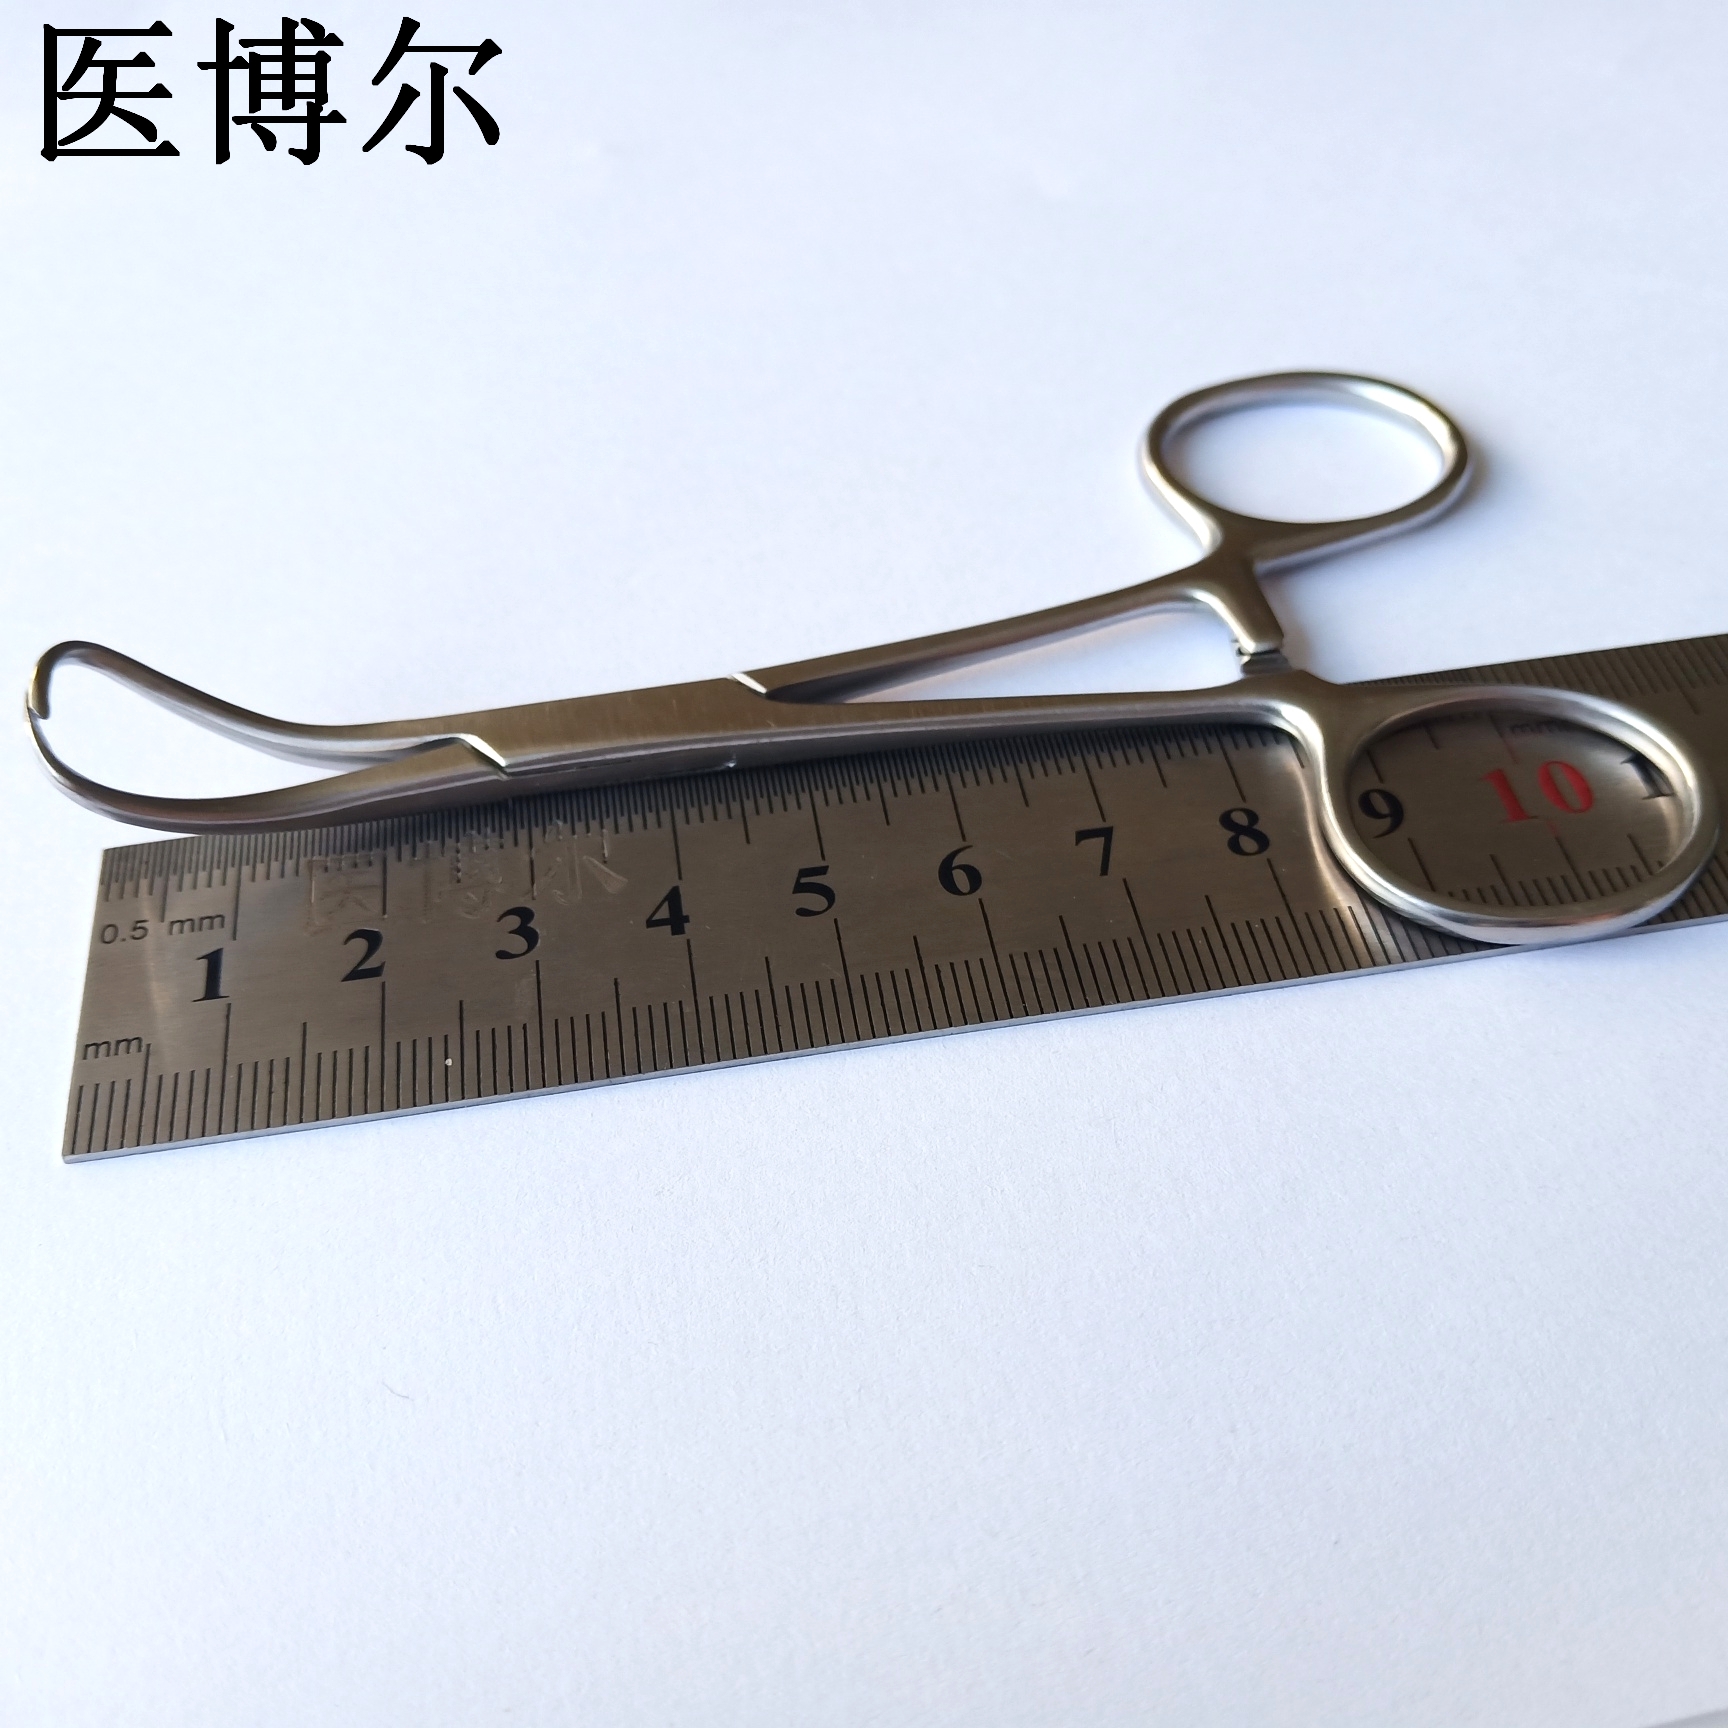 帕巾钳 11cm (9)_看图王.jpg